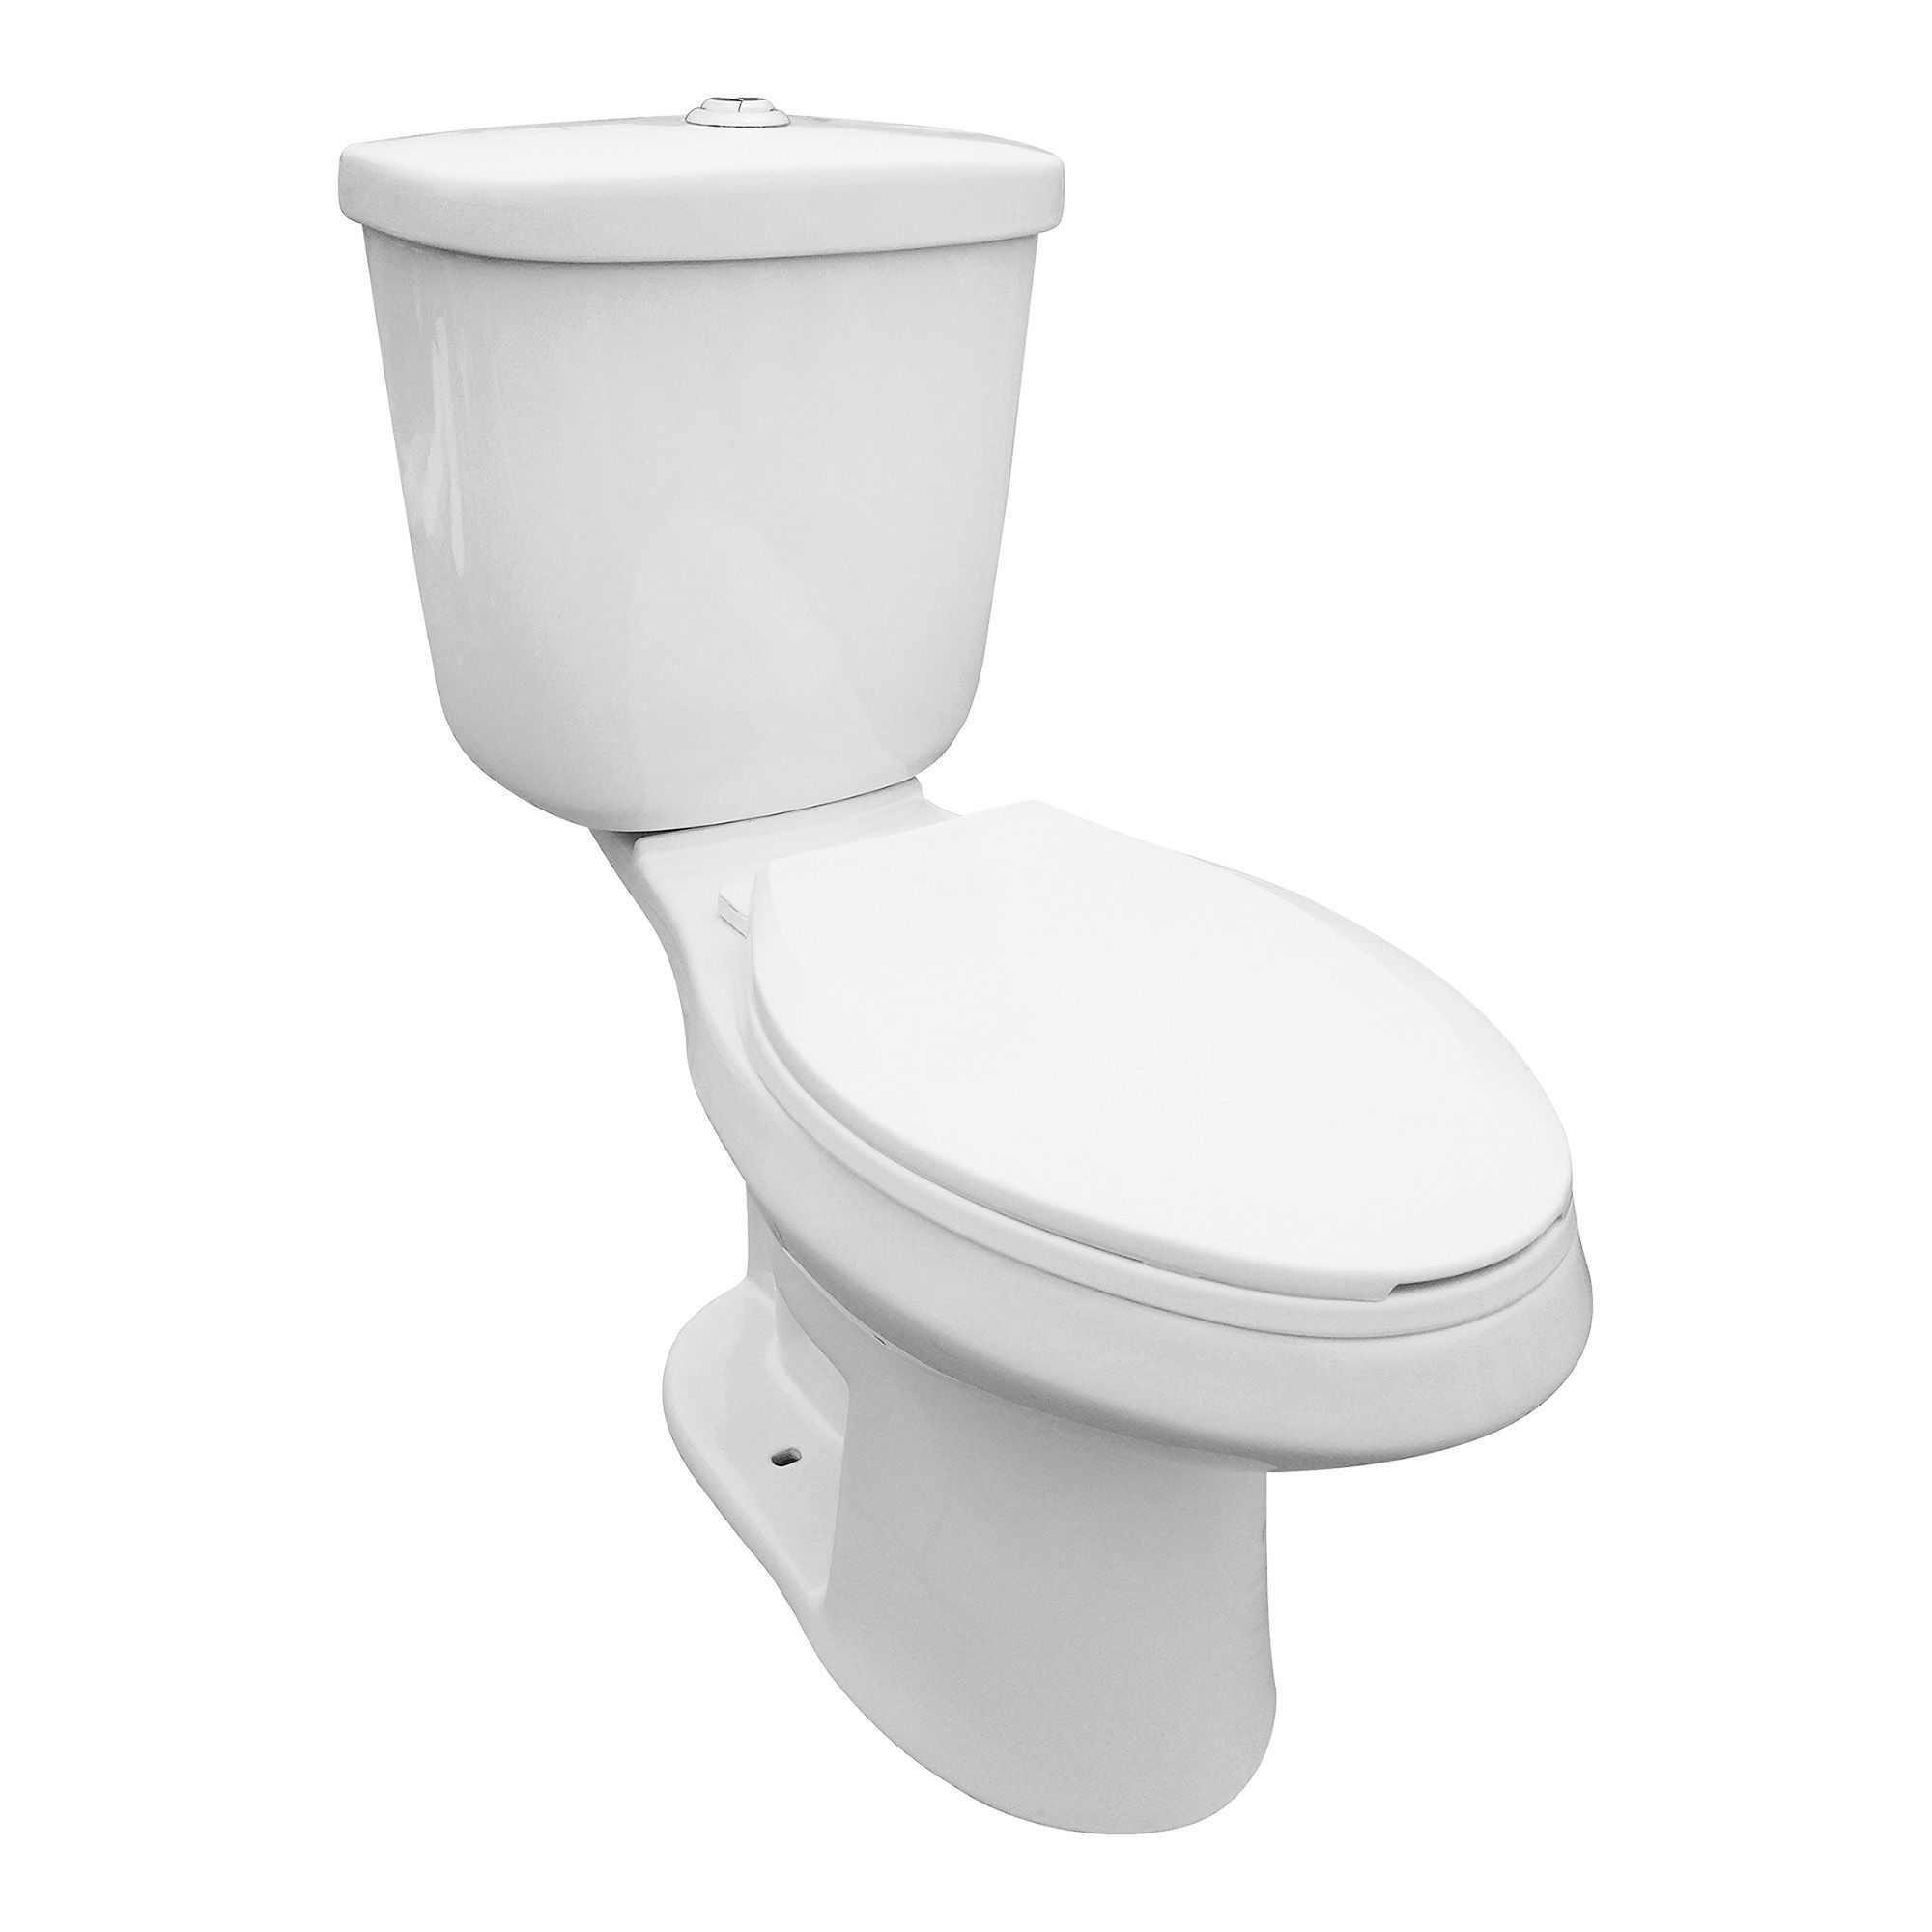 Toilette cuvette allongée Masi, 2 pièces, double chasse Vortex, 4 l/6 l,  blanc